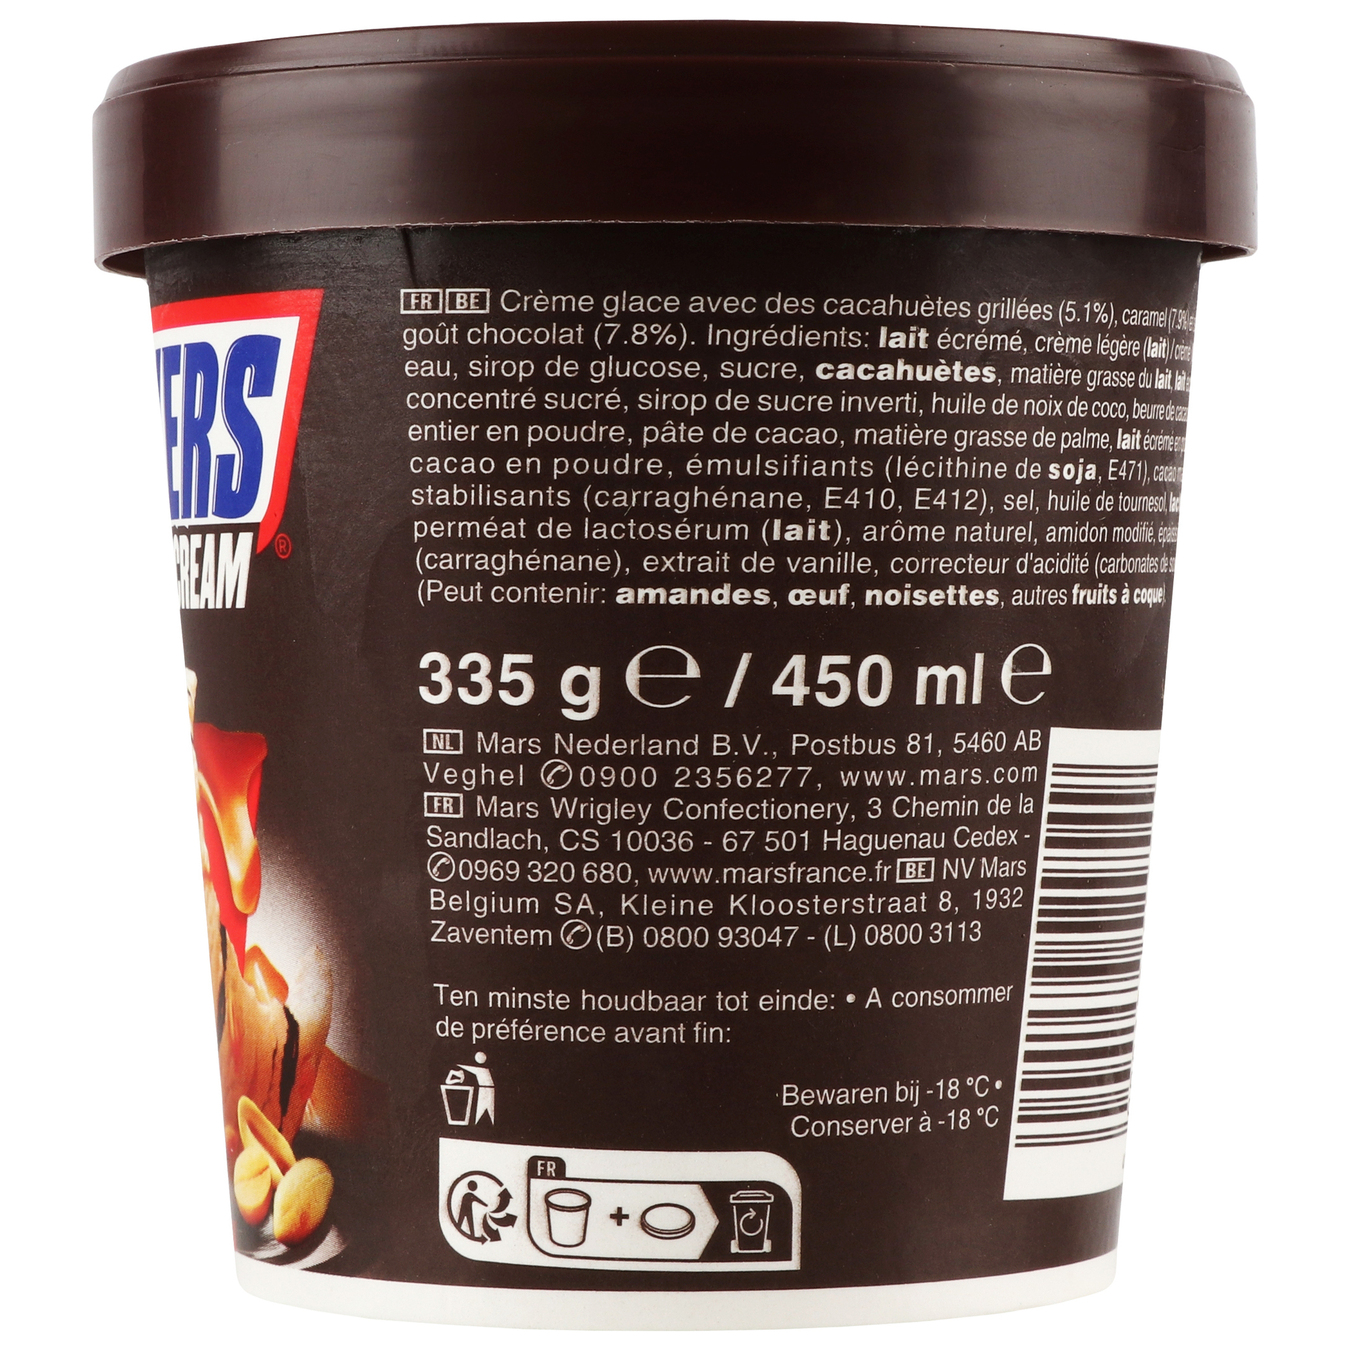 Sniskers ice cream bucket 335g 3